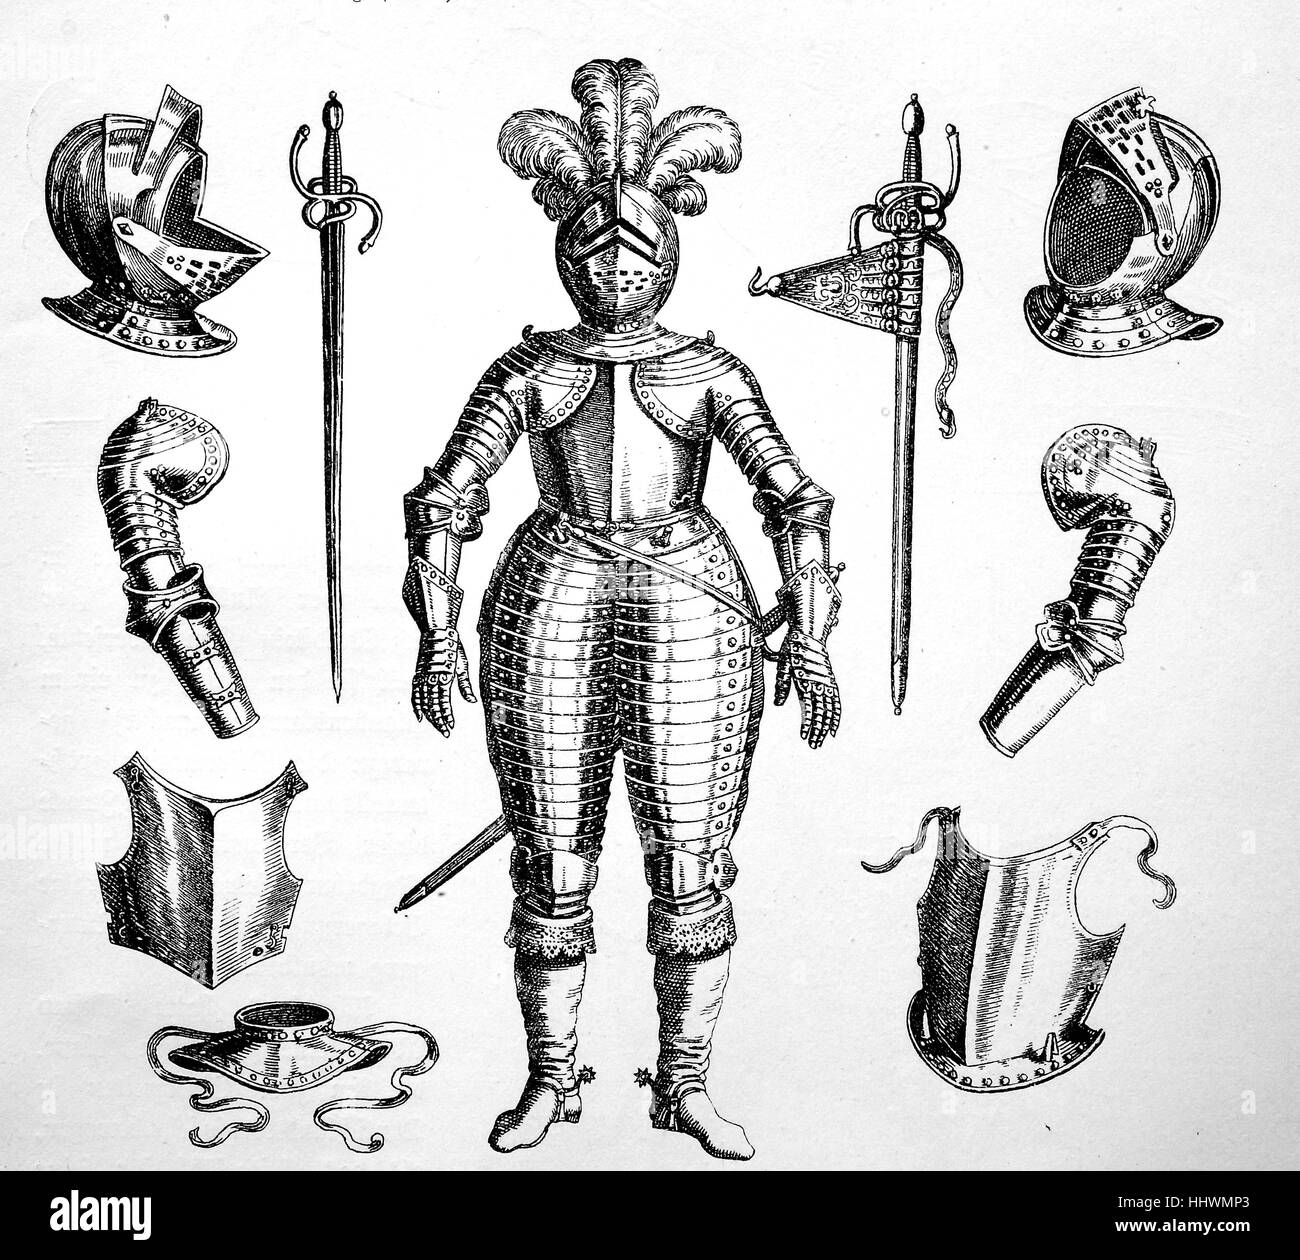 Cuirassier de la guerre de Trente Ans, l'armure du Cuirassier dans ses différentes parties, l'image historique ou illustration, publié 1890, l'amélioration numérique Banque D'Images